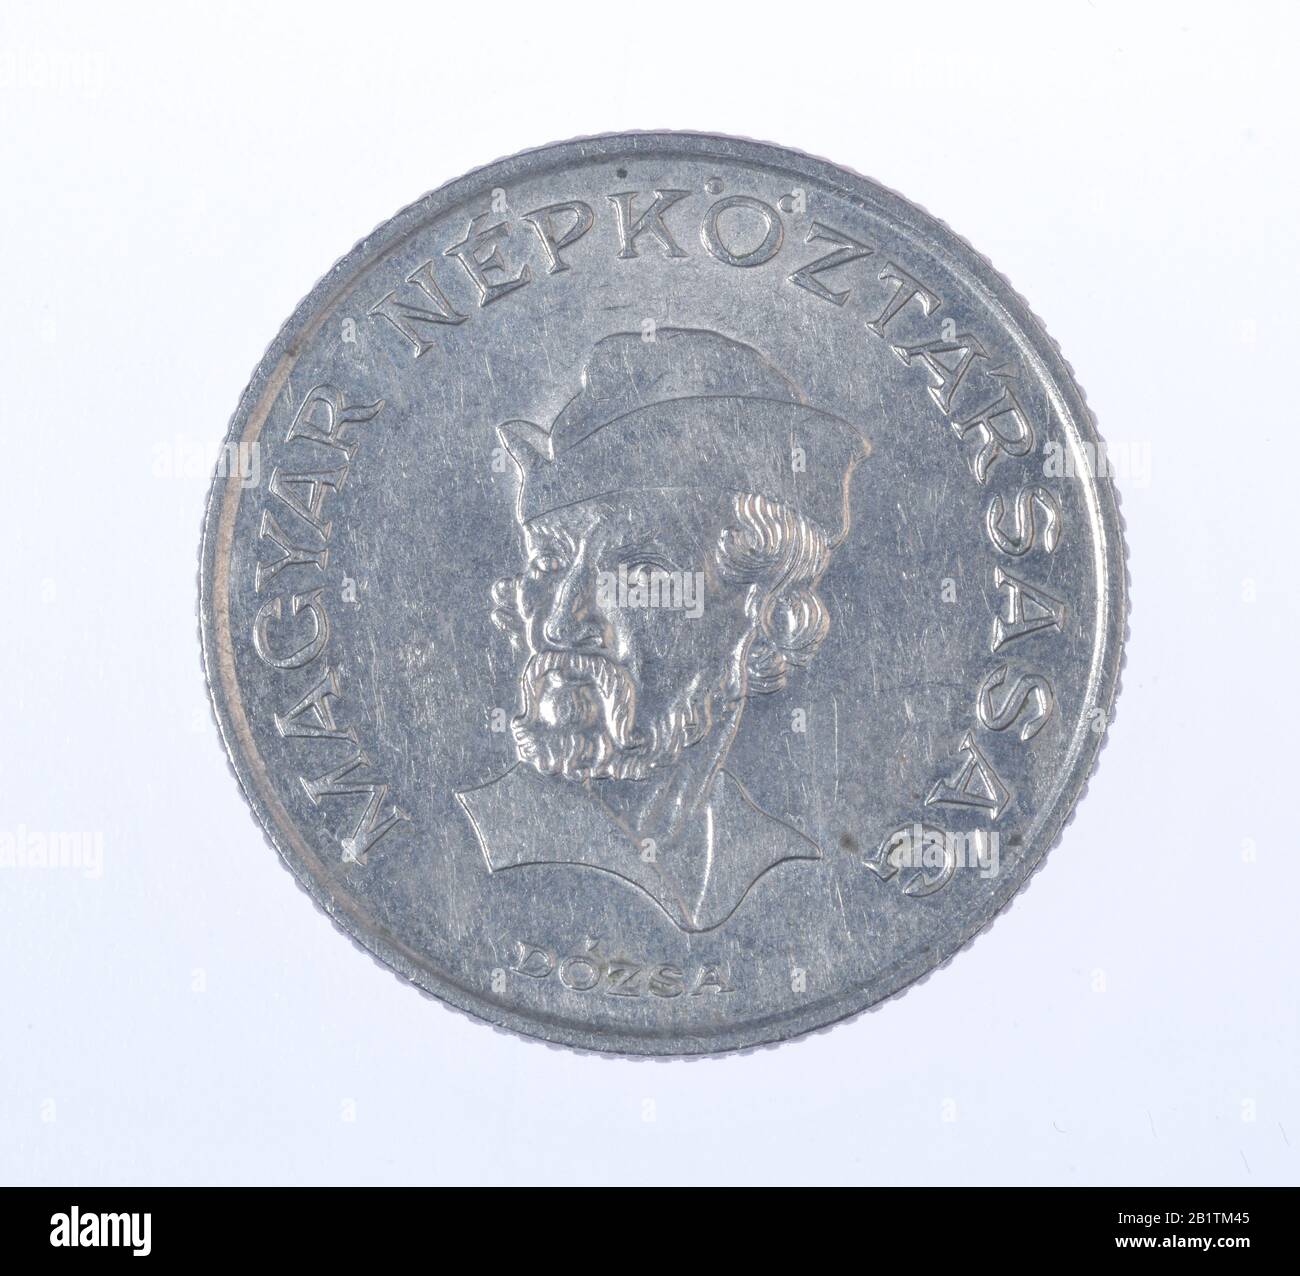 Geldmünze, 20 Forint, Ungarn Stock Photo